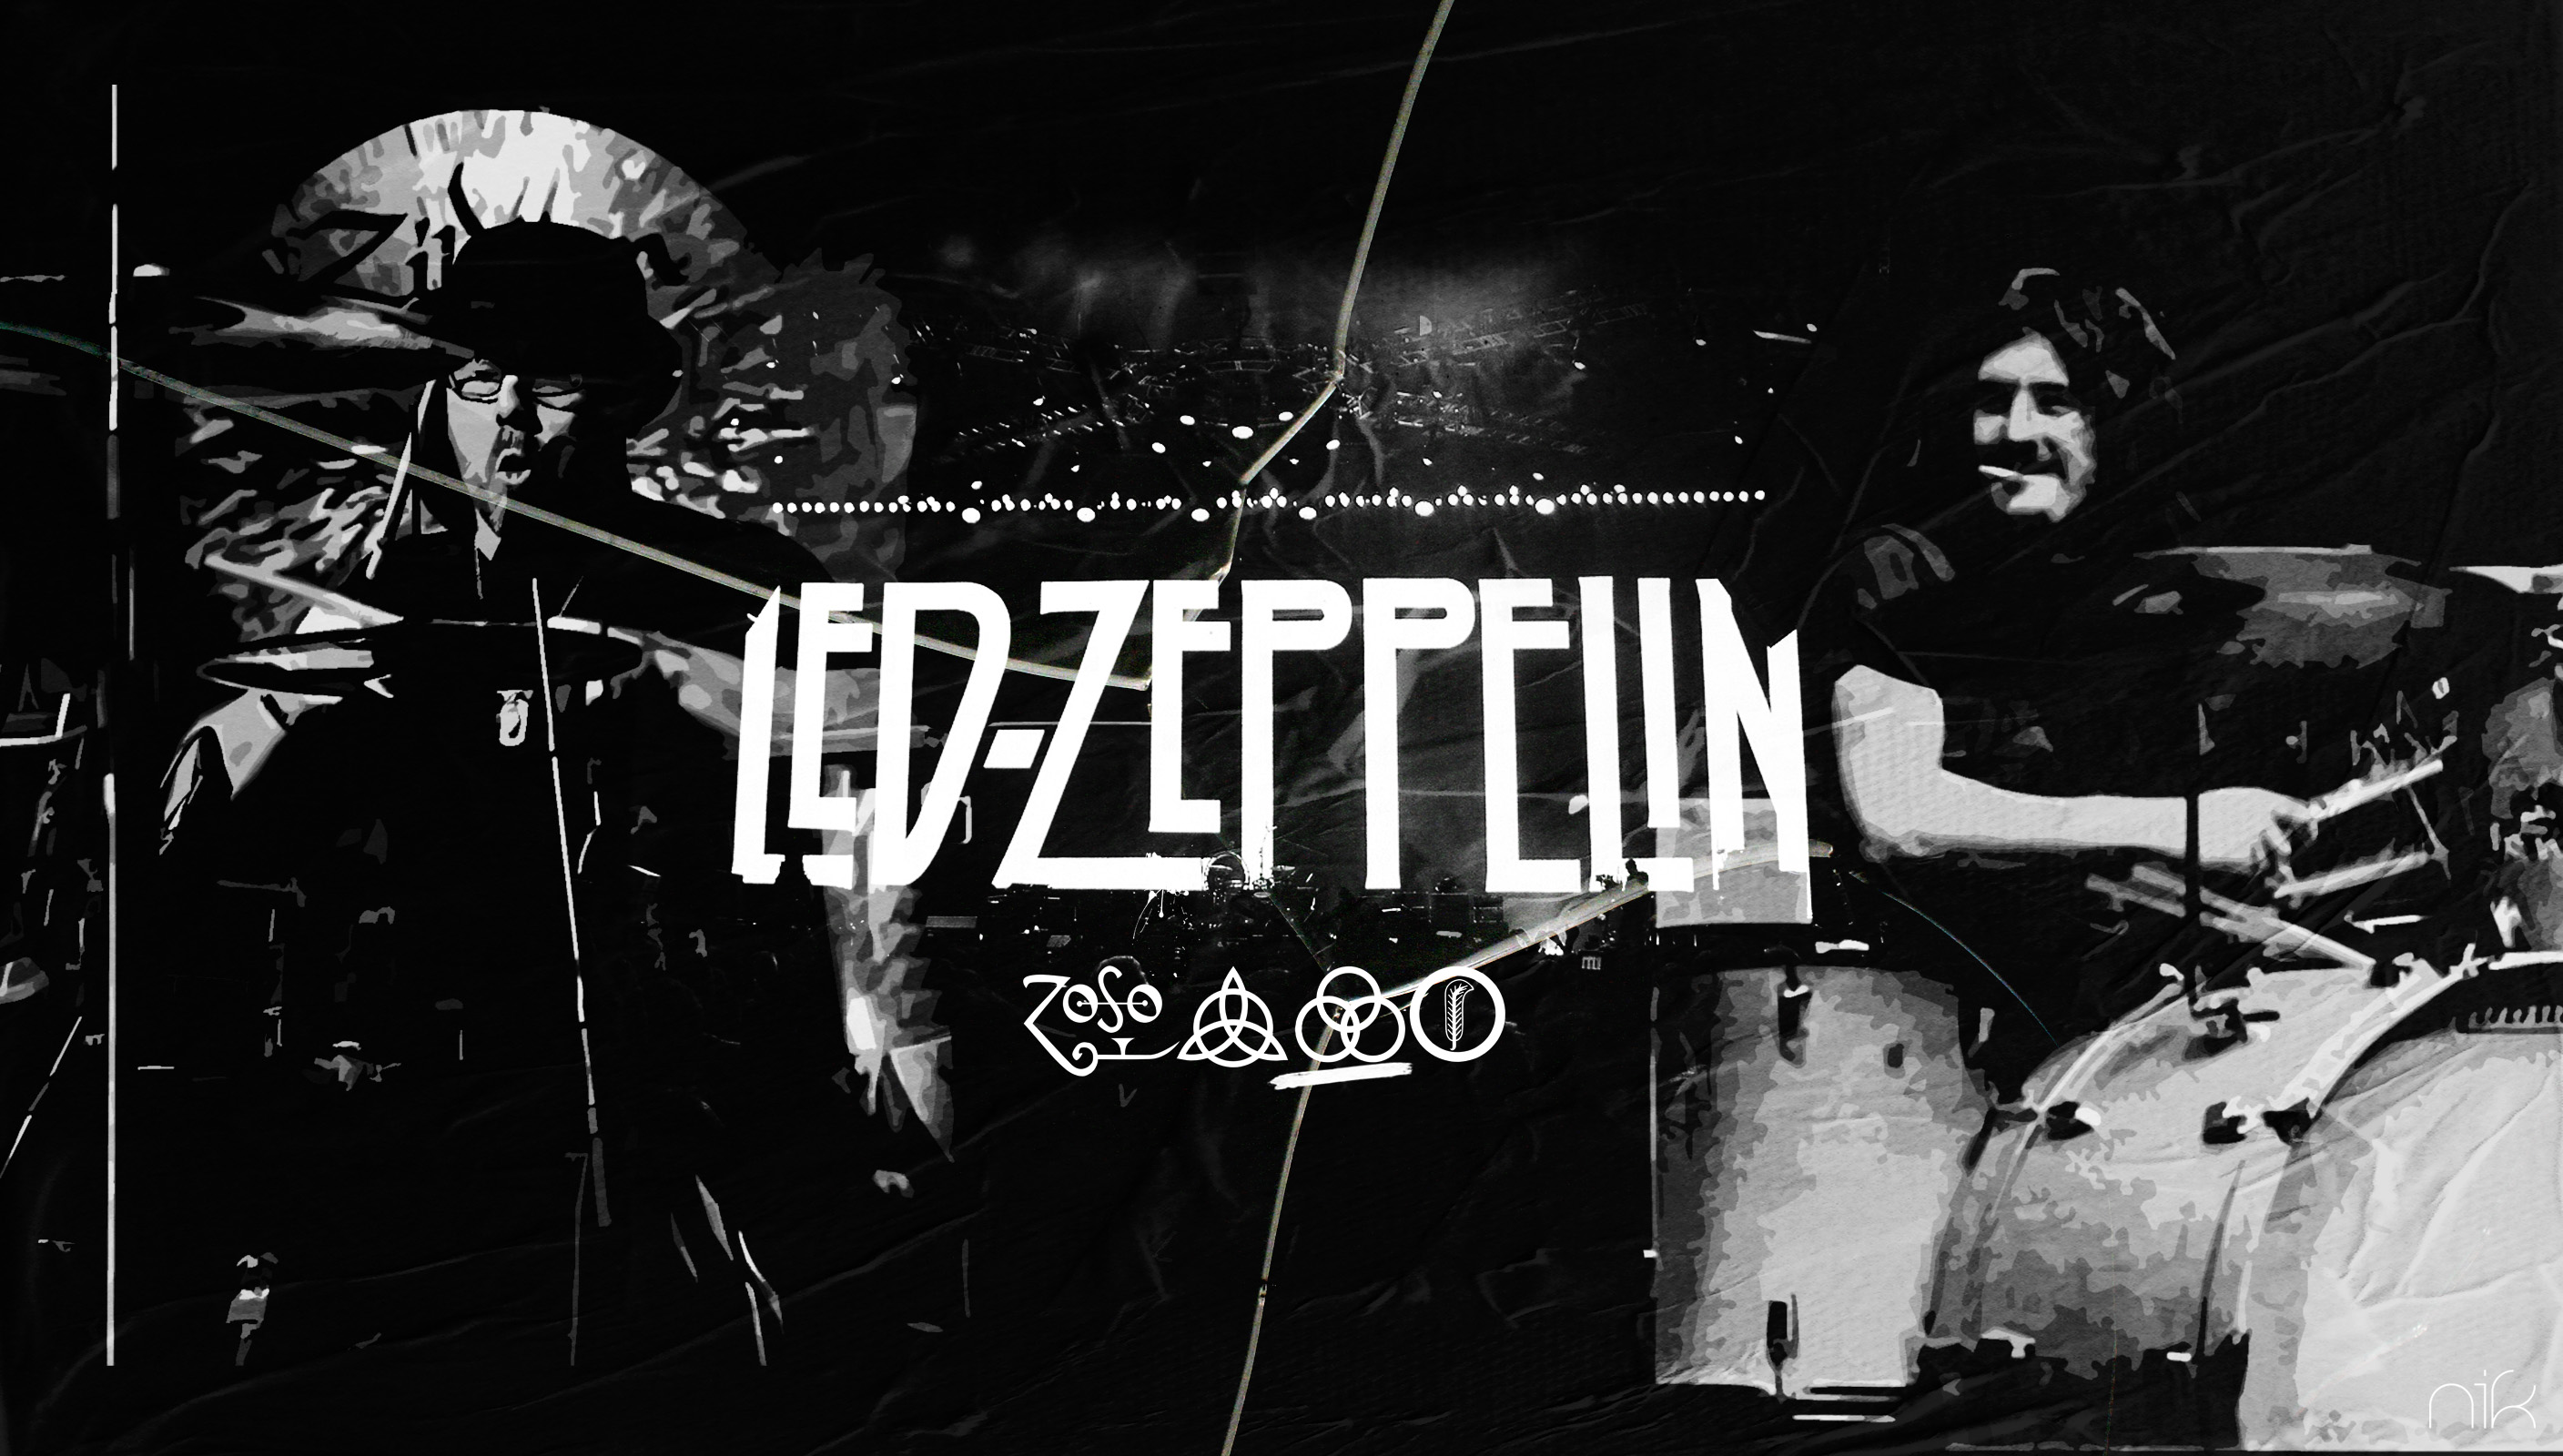 Led Zeppelin Wallpaper 4 by nicollearl on DeviantArt